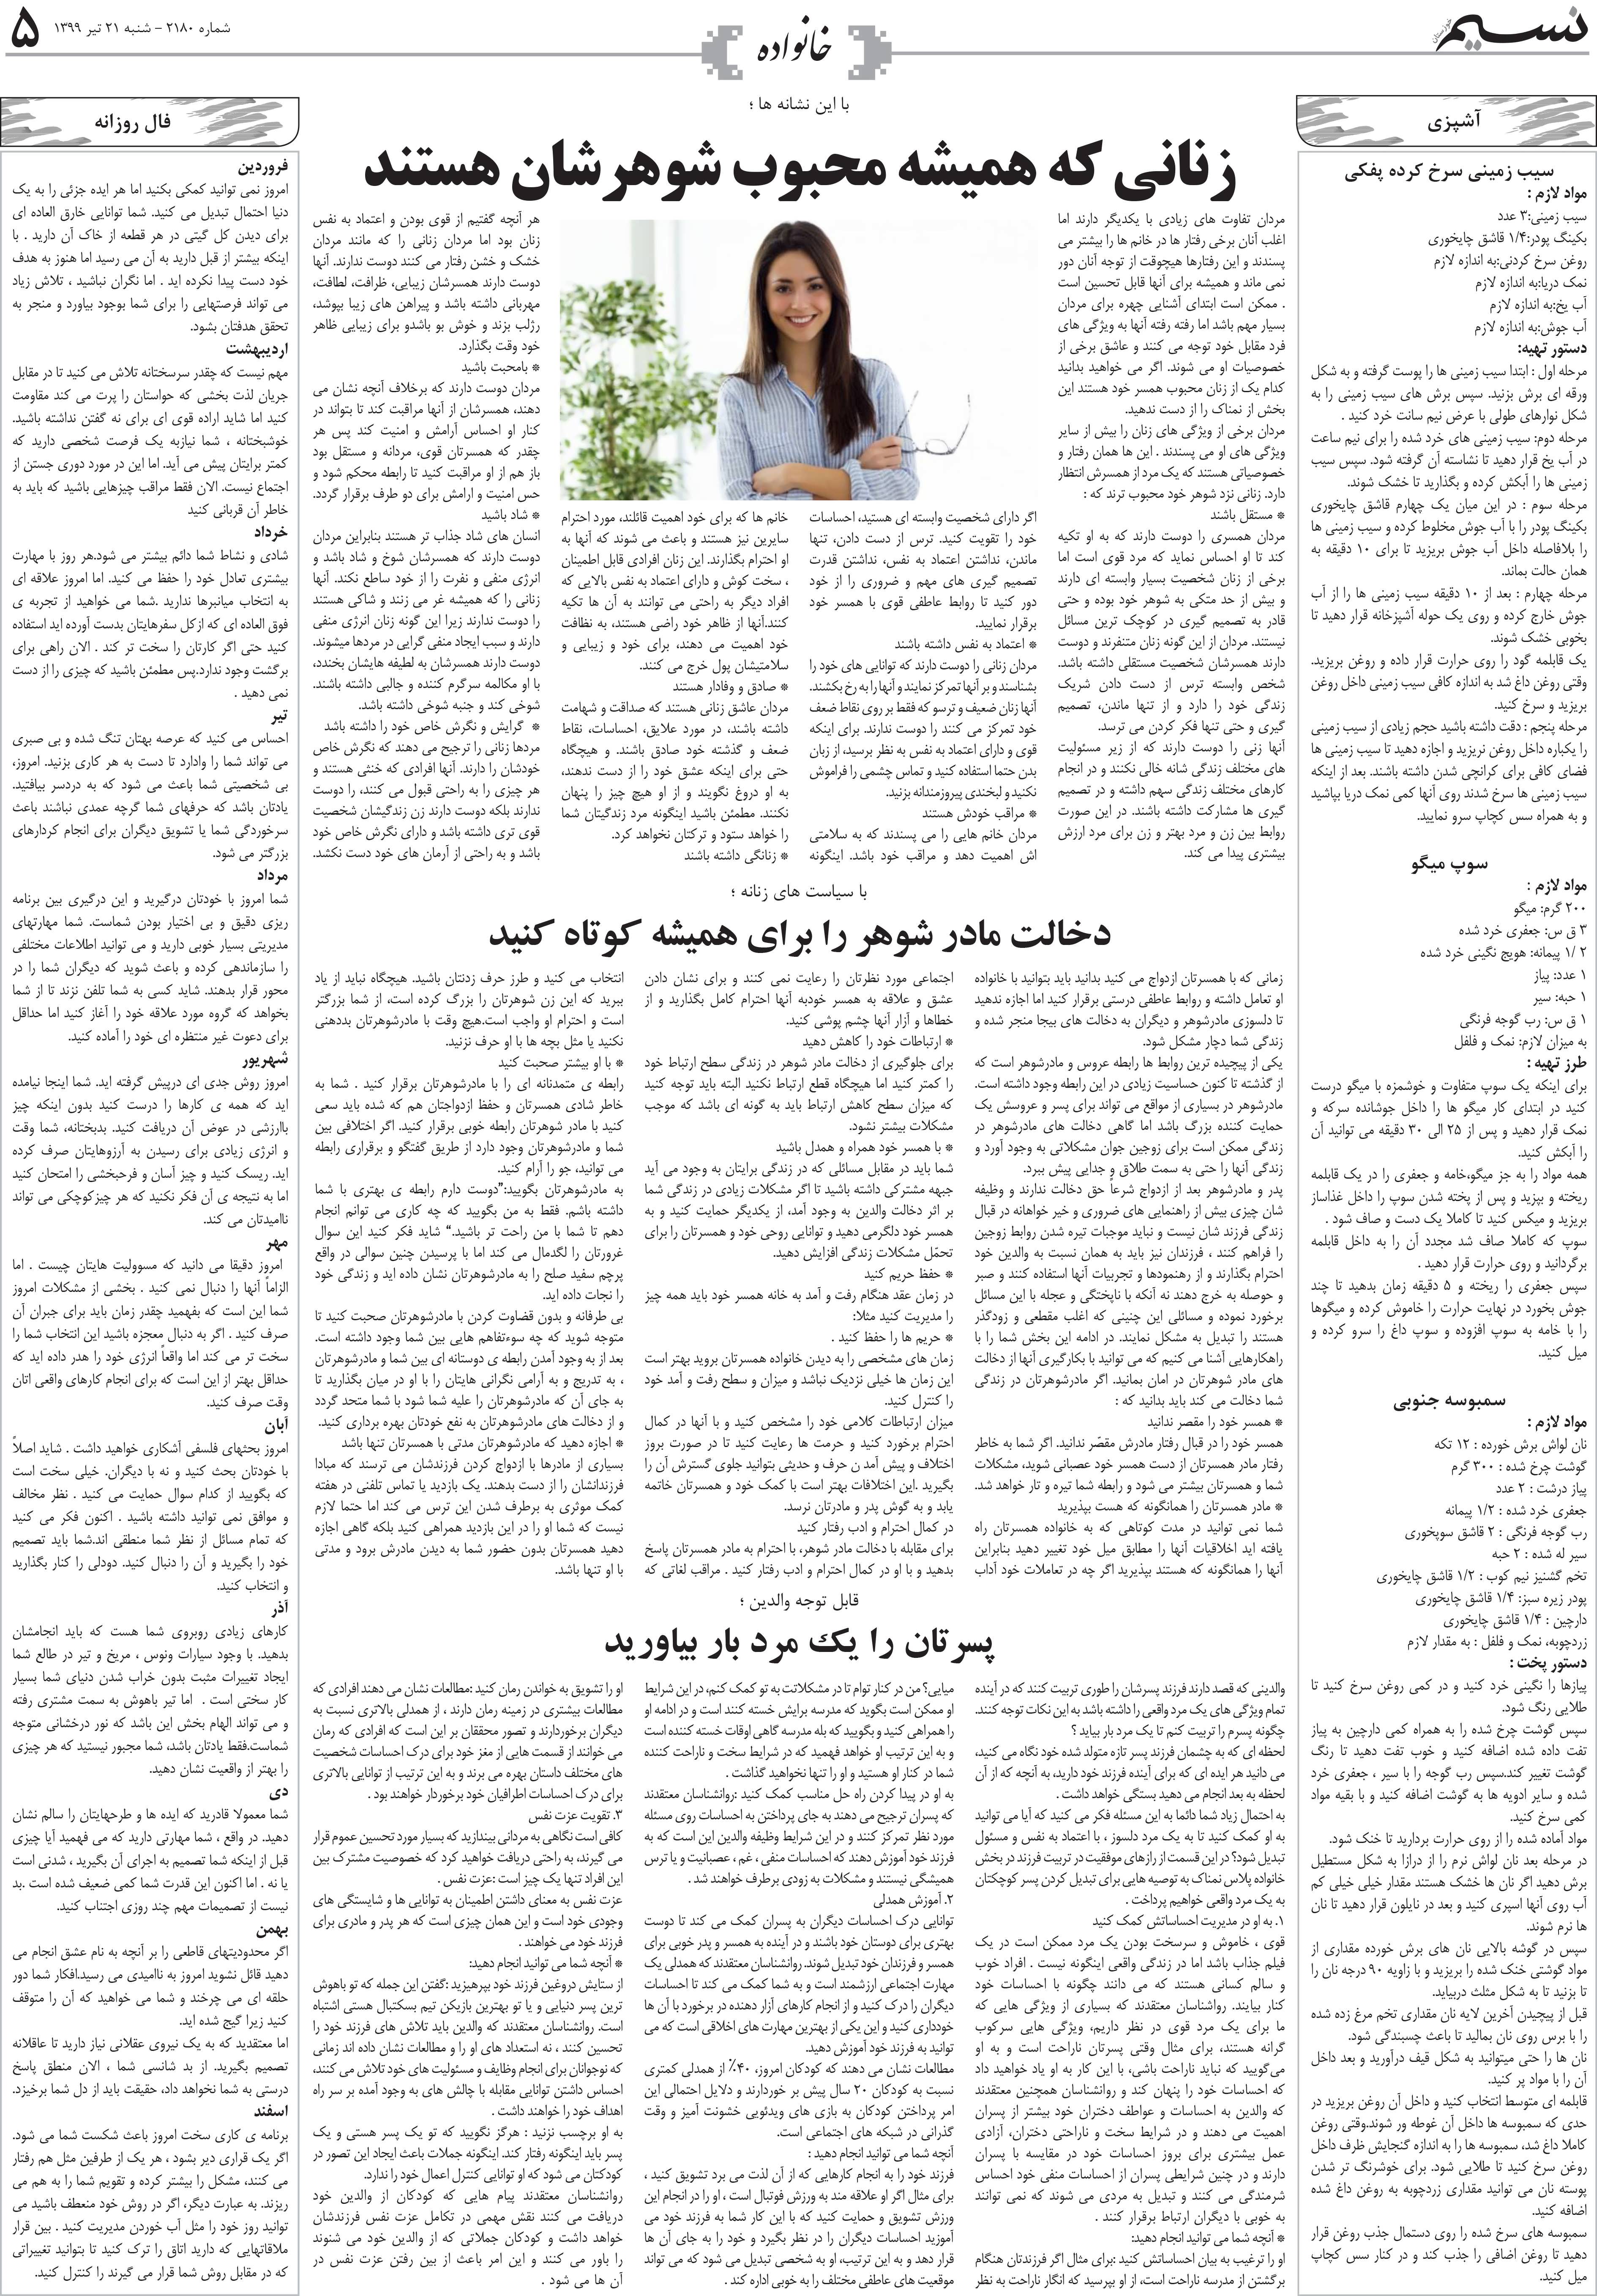 صفحه خانواده روزنامه نسیم شماره 2180